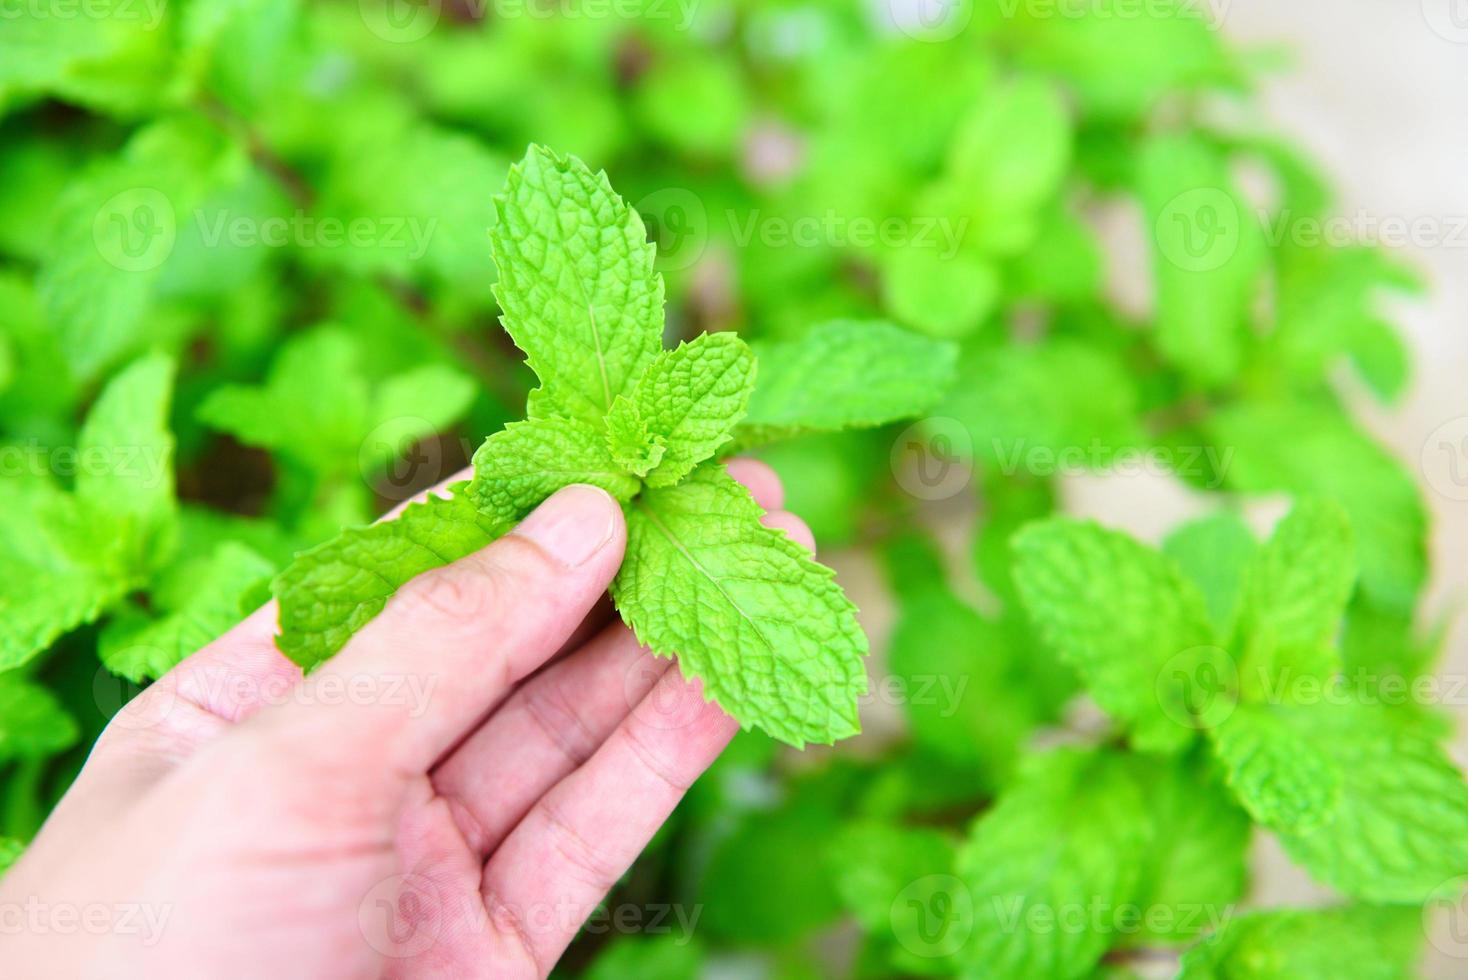 färska mynta blad i handen i en natur gröna örter eller grönsaker mat - pepparmynta blad i trädgården bakgrunden foto